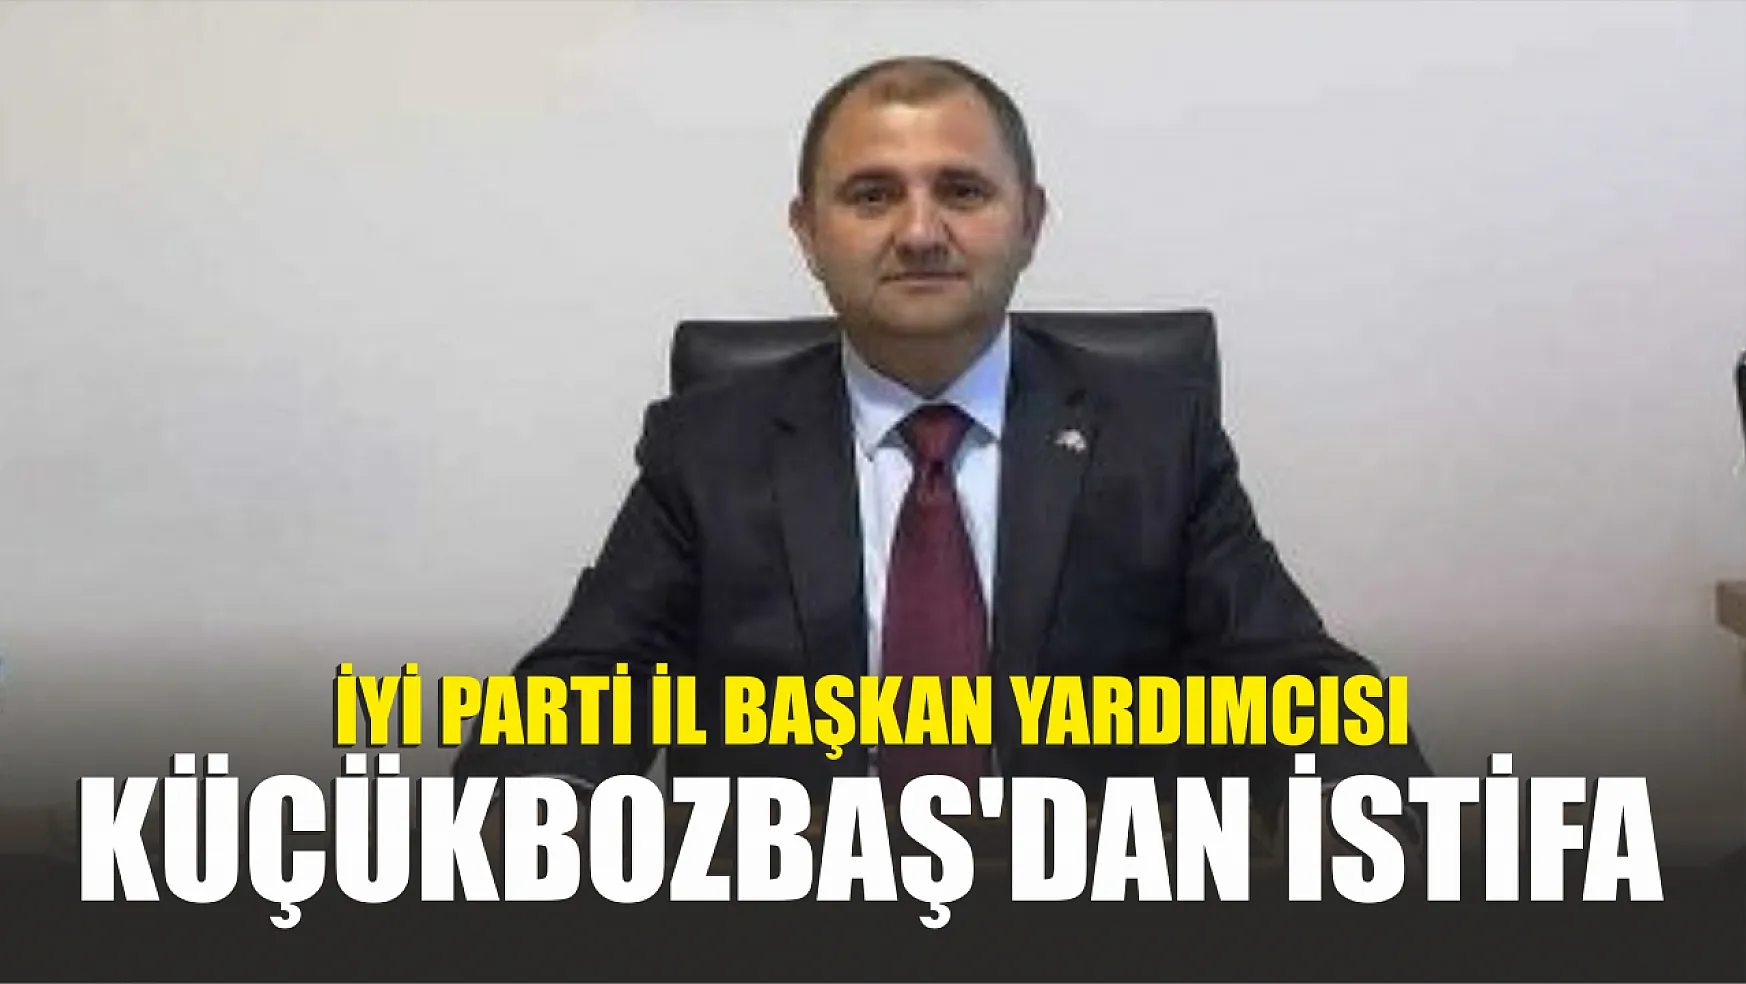 İYİ Parti İl Başkan Yardımcısı Küçükbozbaş'dan istifa